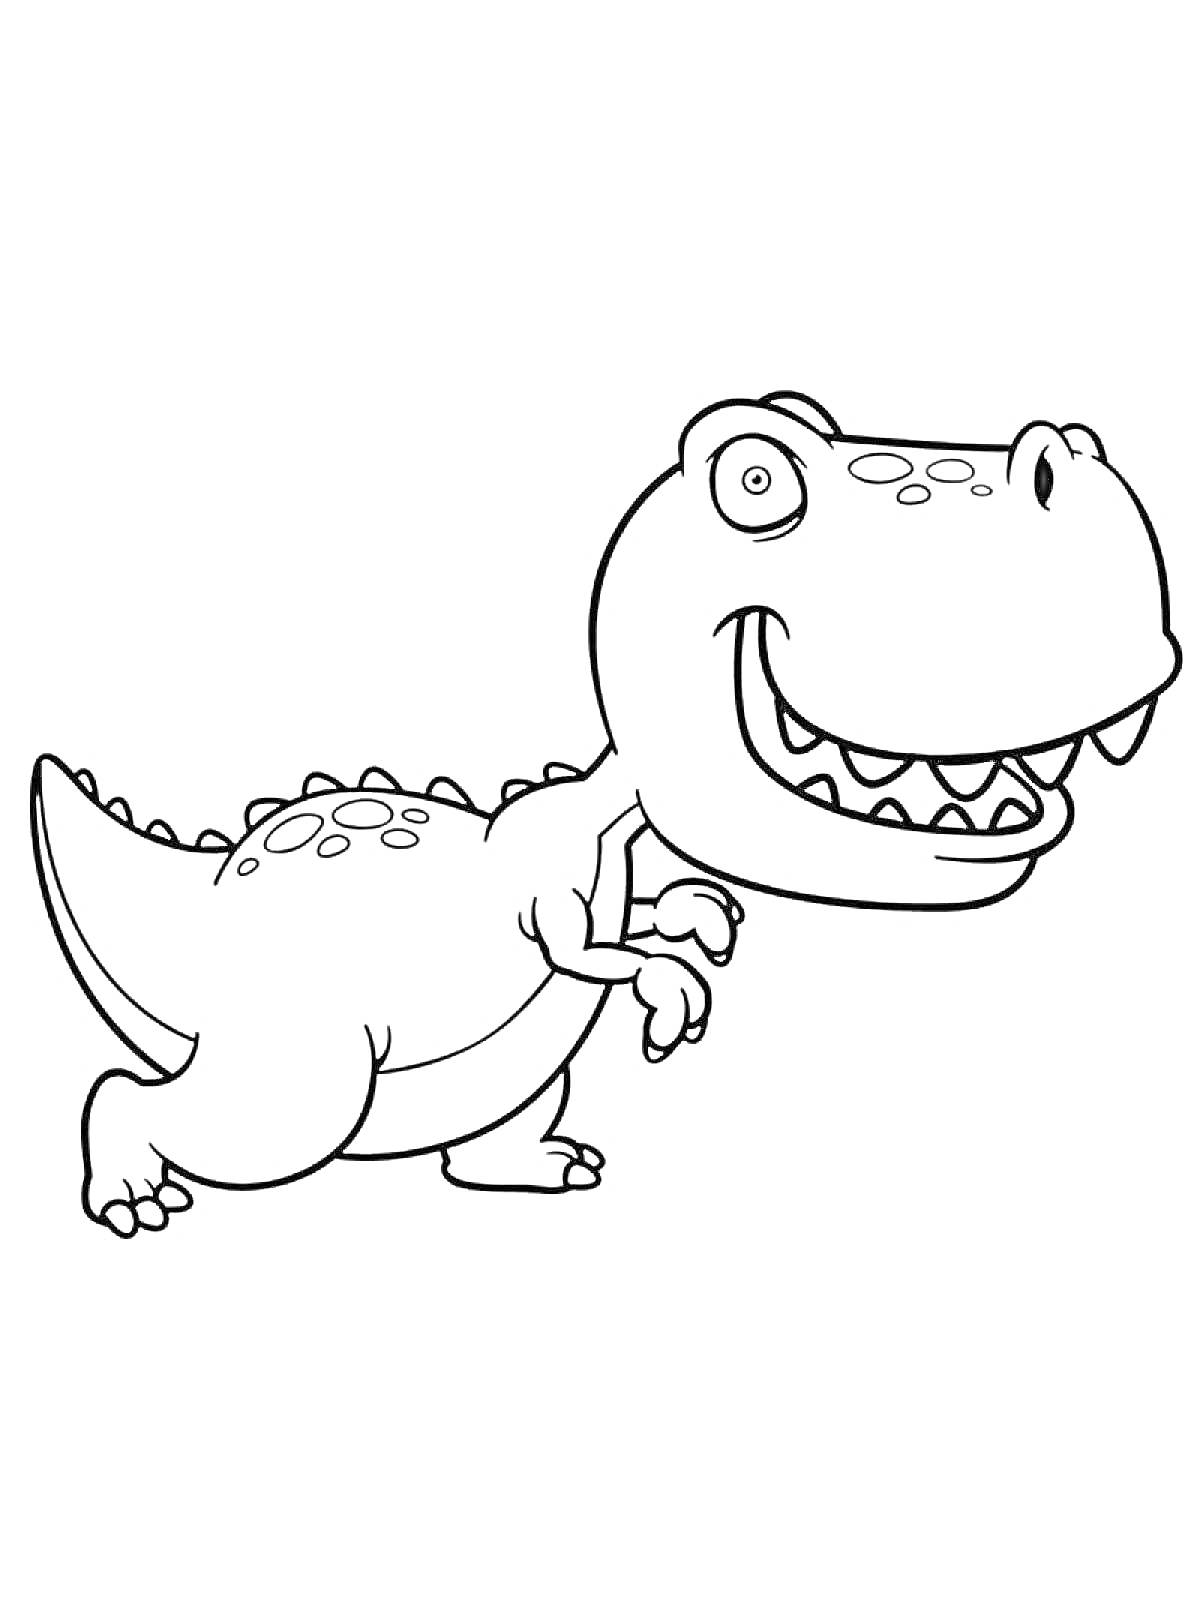 Динозавр Тираннозавр Рекс с большими глазами, широкими зубами, стоящий на двух лапах.